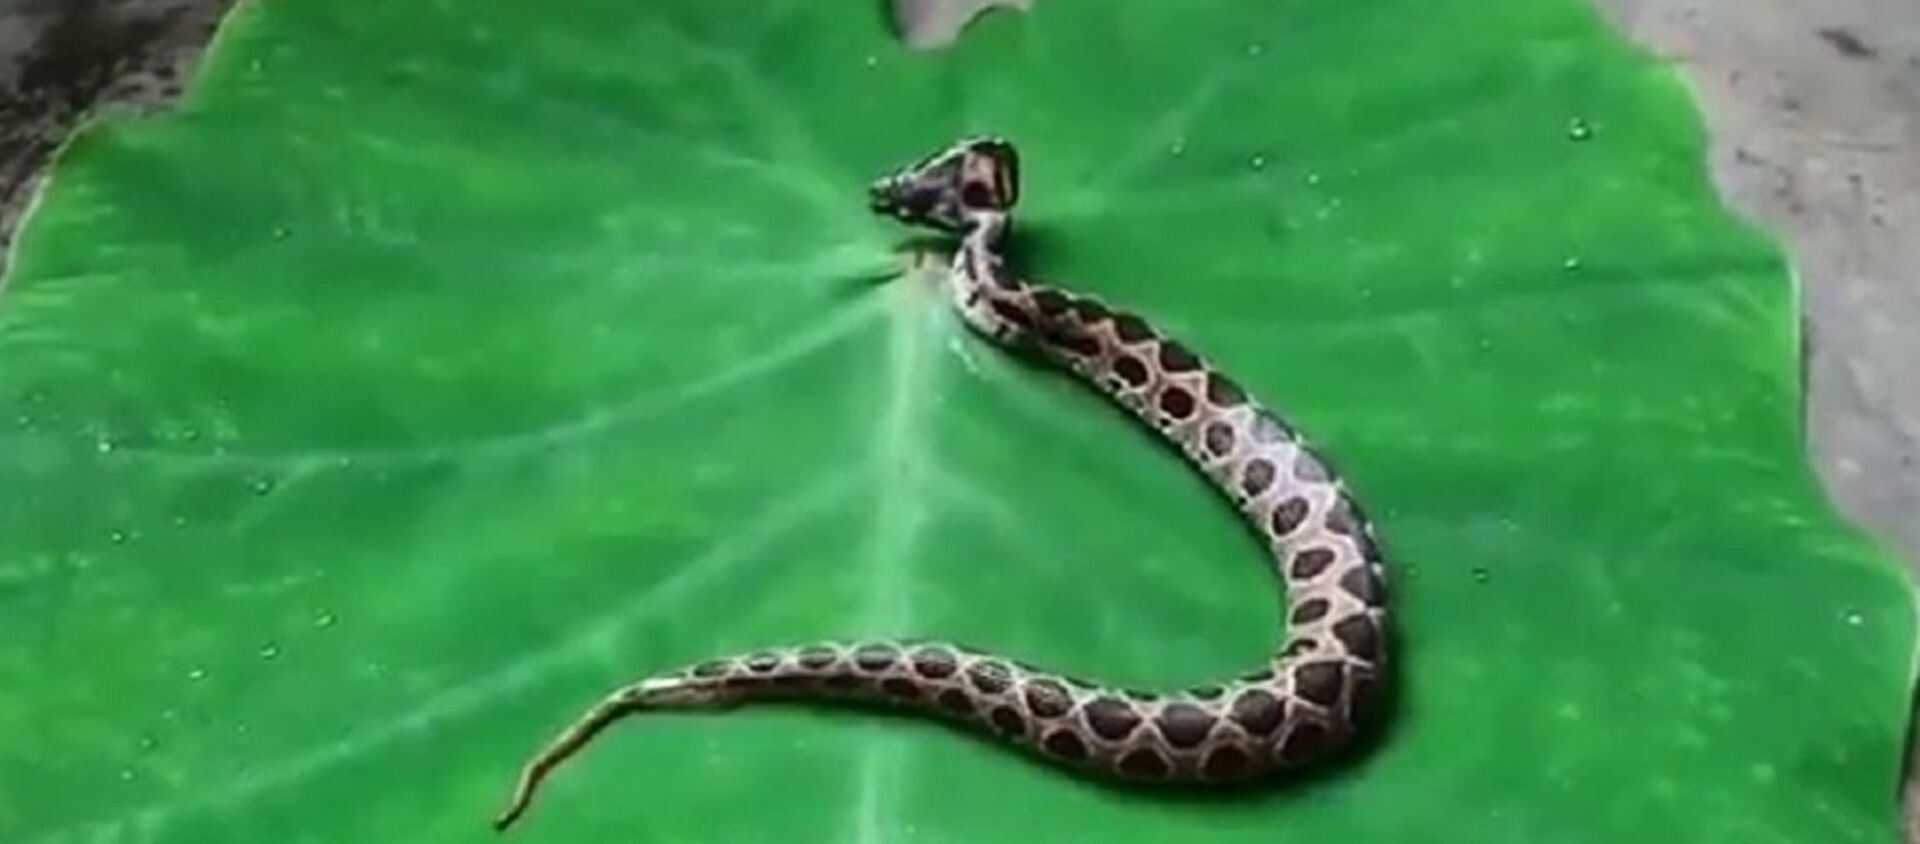 Ở Ấn Độ phát hiện một con rắn độc hai đầu thuộc loại hiếm - Sputnik Việt Nam, 1920, 11.08.2020